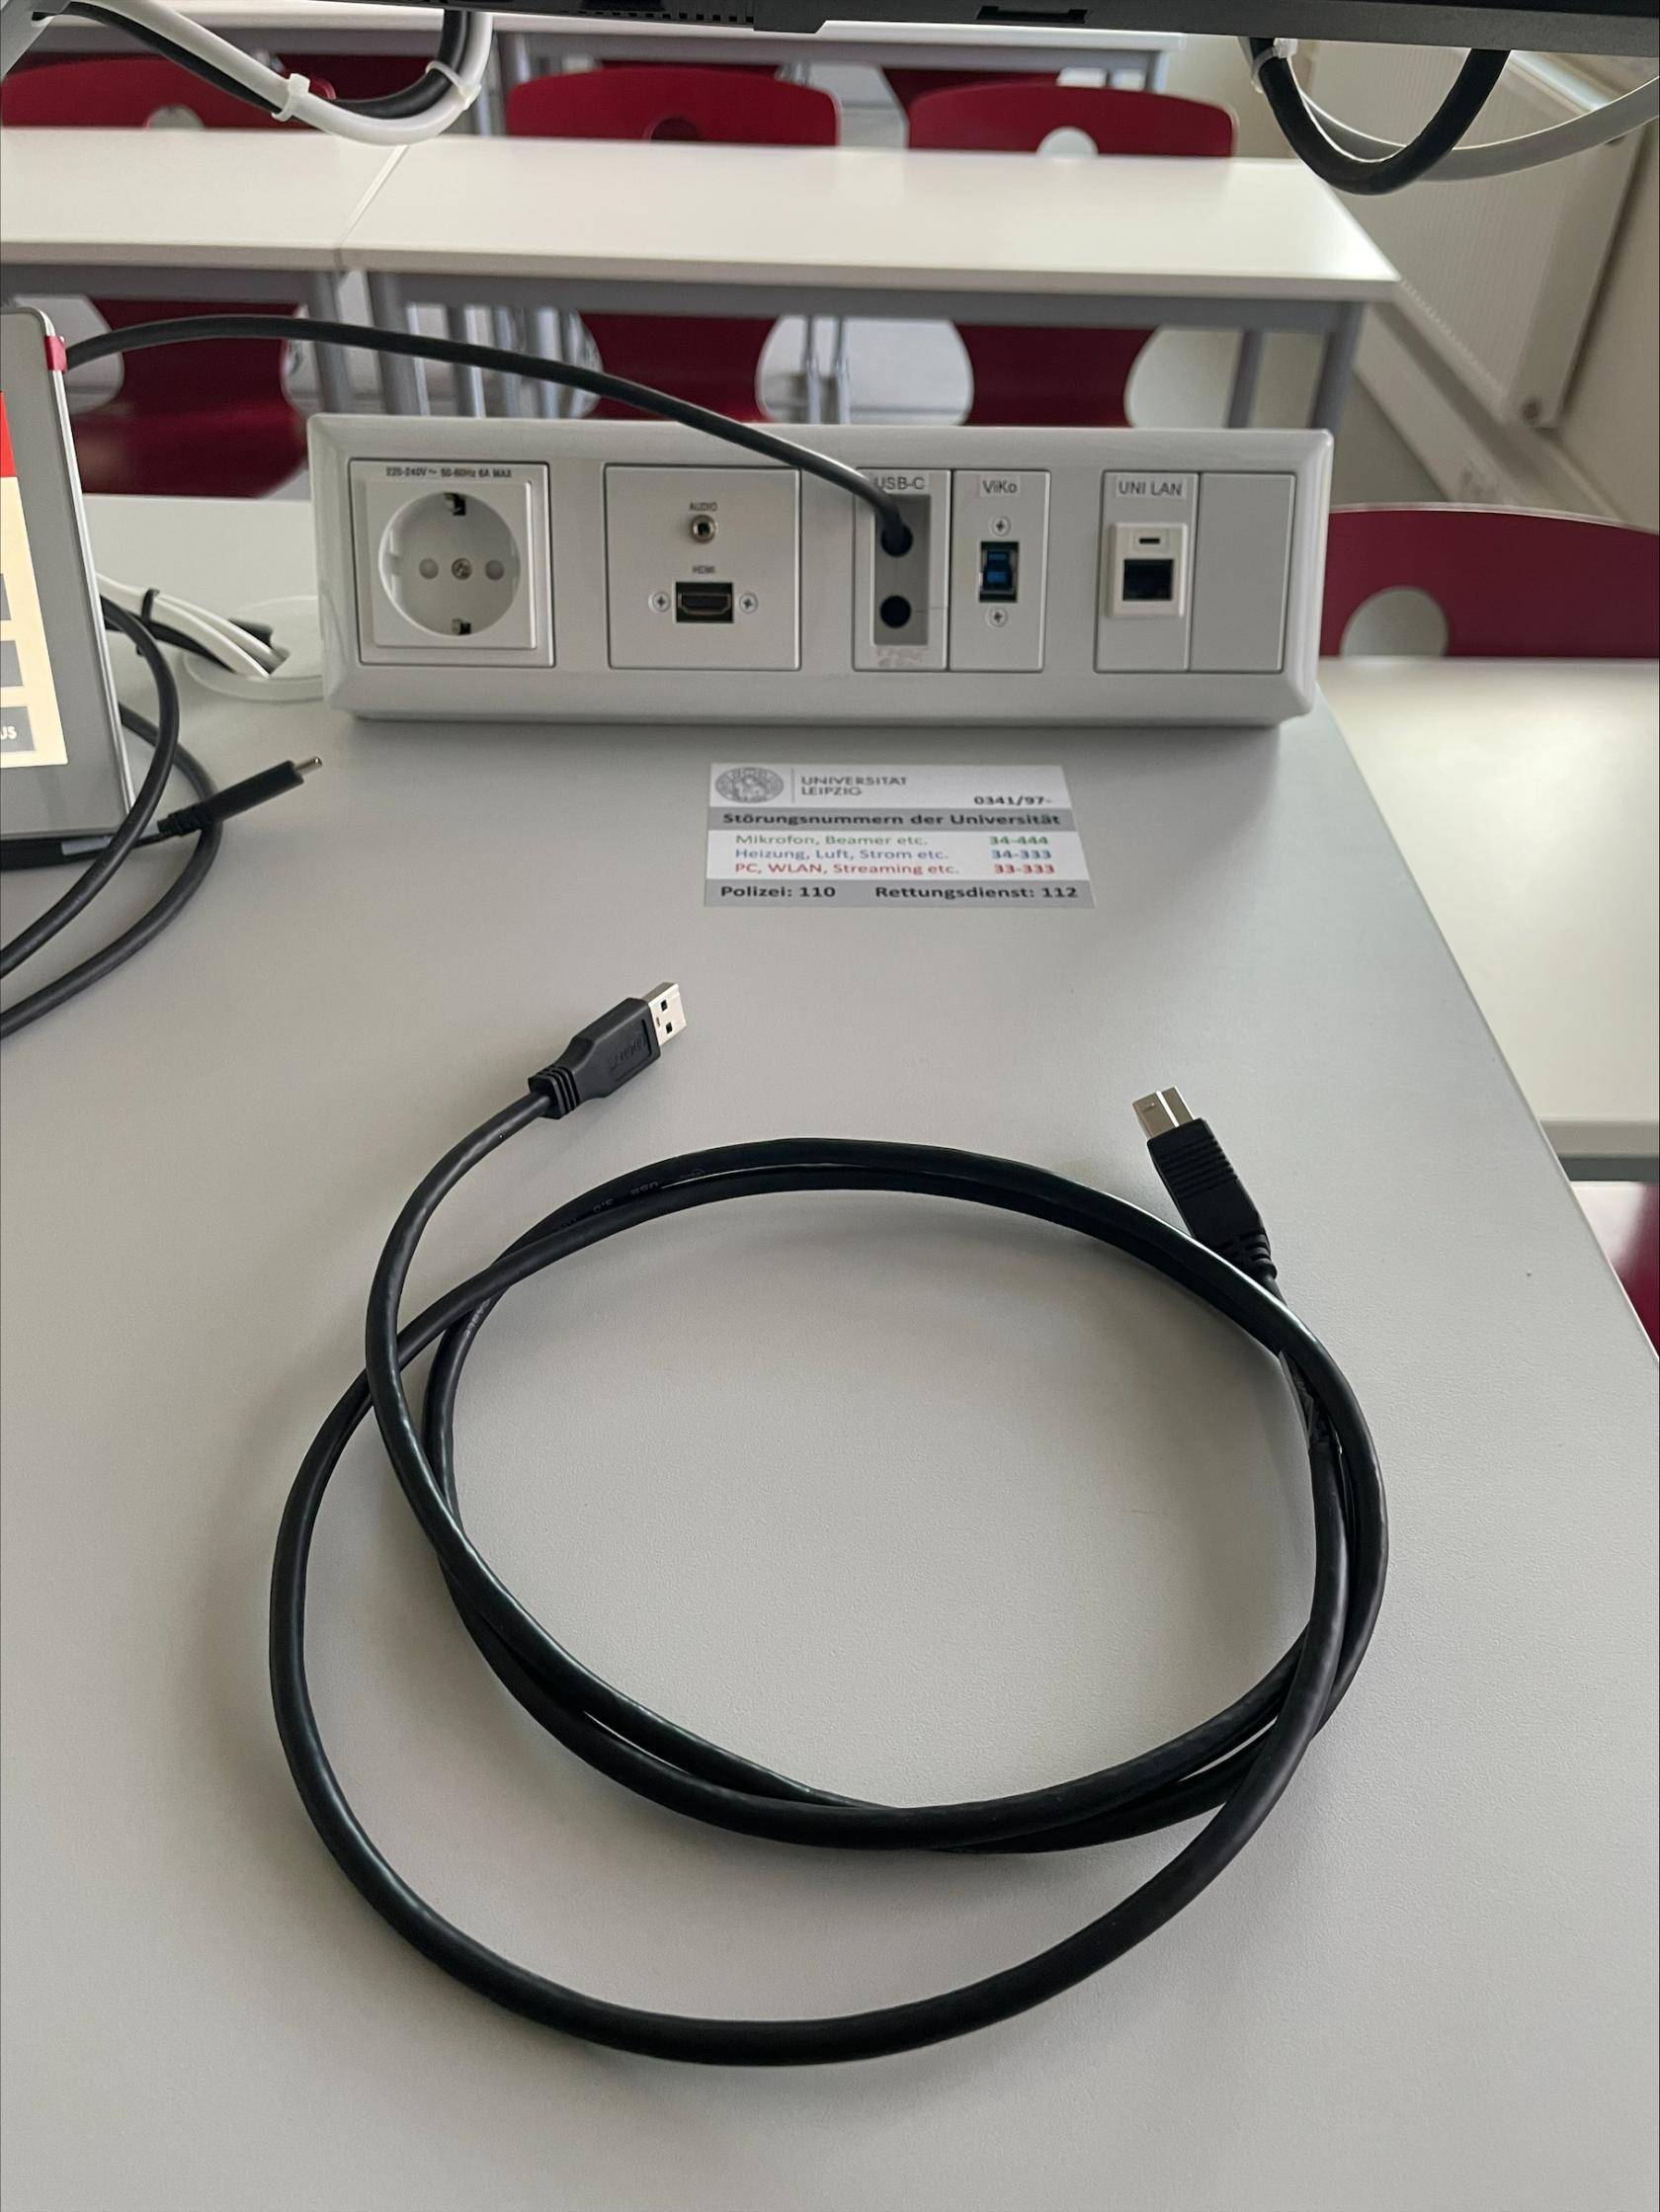 USB-B Kabel zur Nutzung der Videokonferenzanlage, oben mittig im Bild das Anschlussfeld